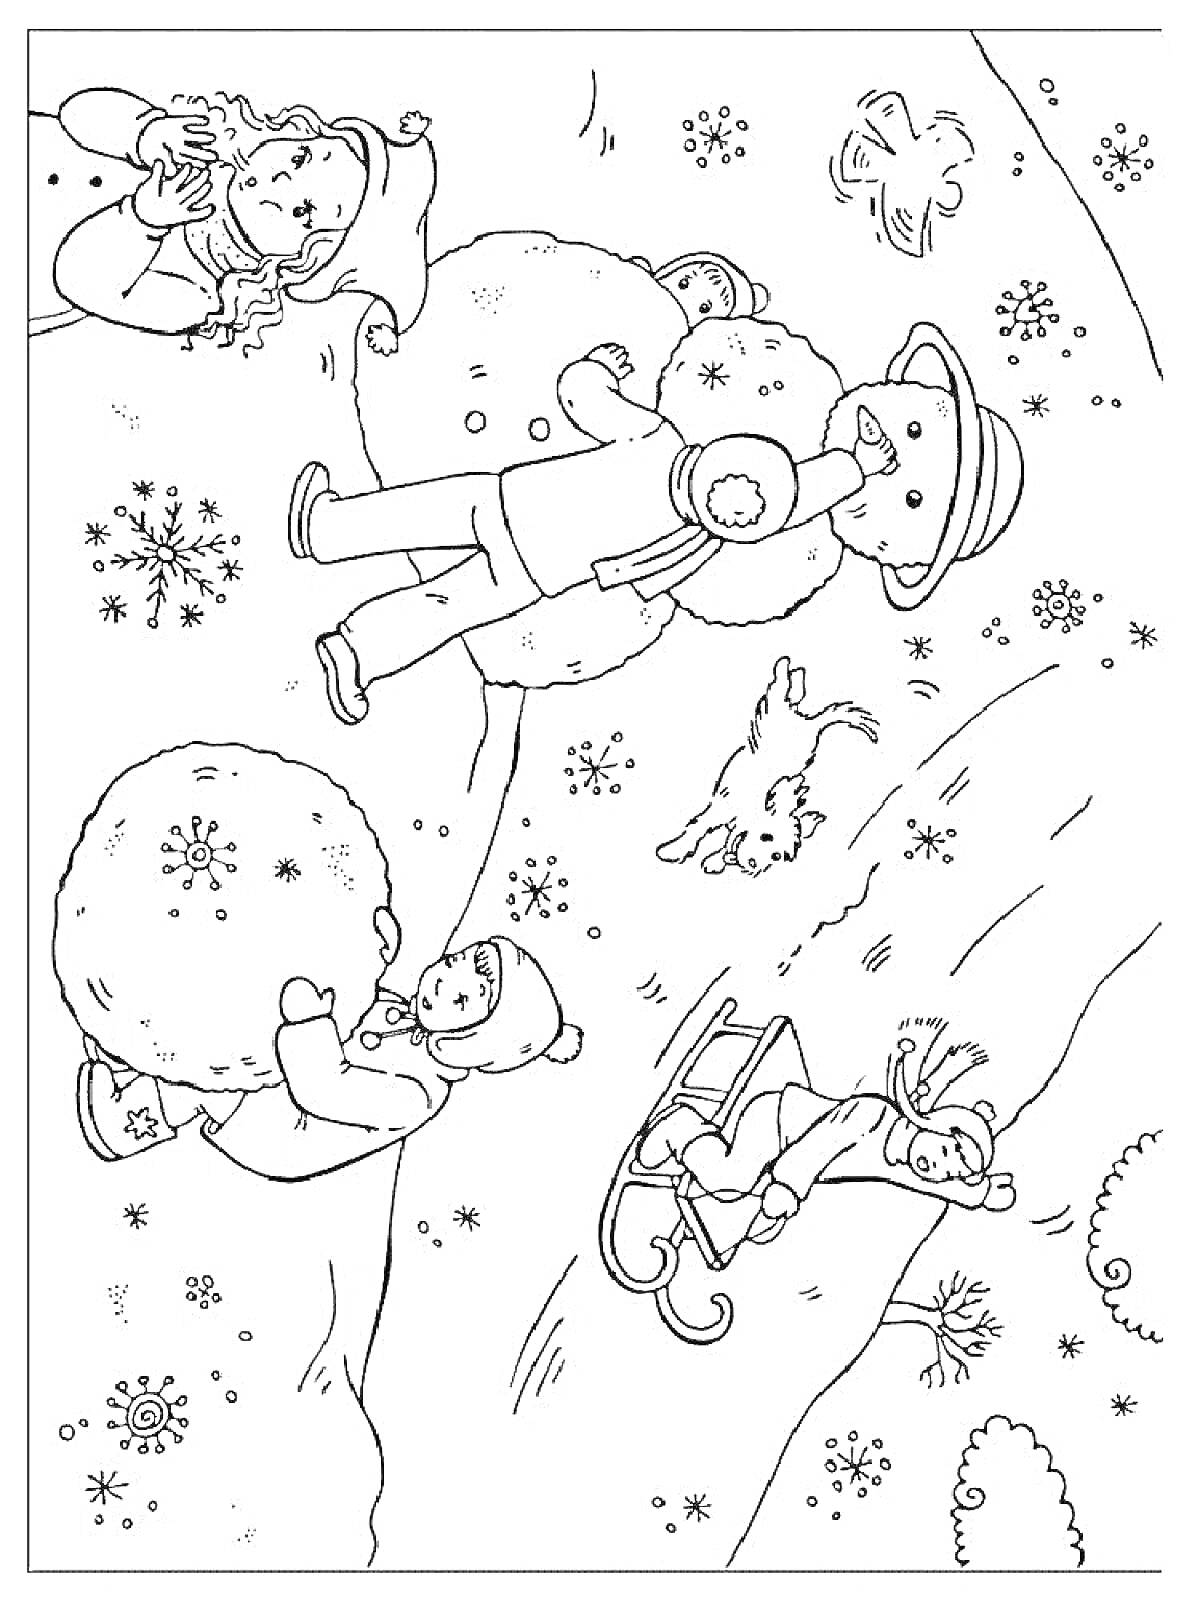 Раскраска Дети играют на снегу: лепка снеговика, катание с горки на санках, игра с собакой